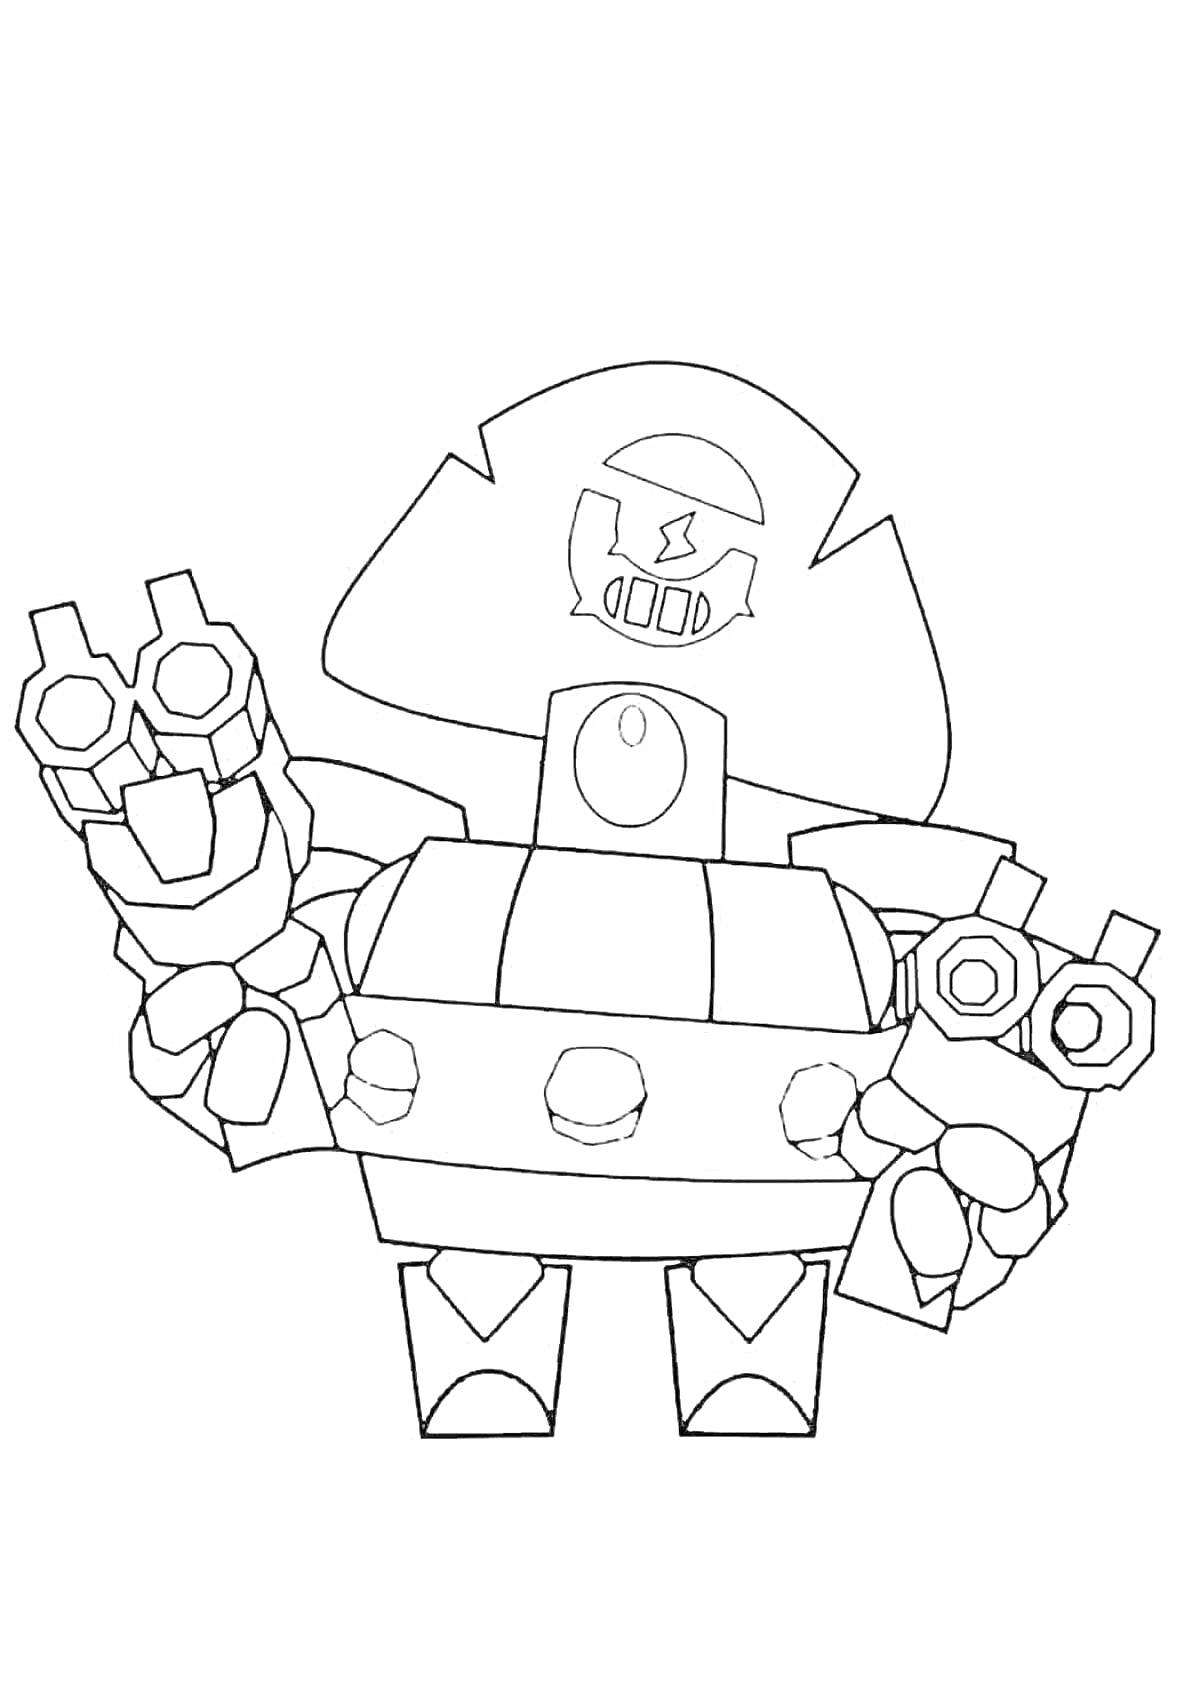 На раскраске изображено: Динамайк, Робот, Пиратская шляпа, Оружие, Череп и кости, Большие руки